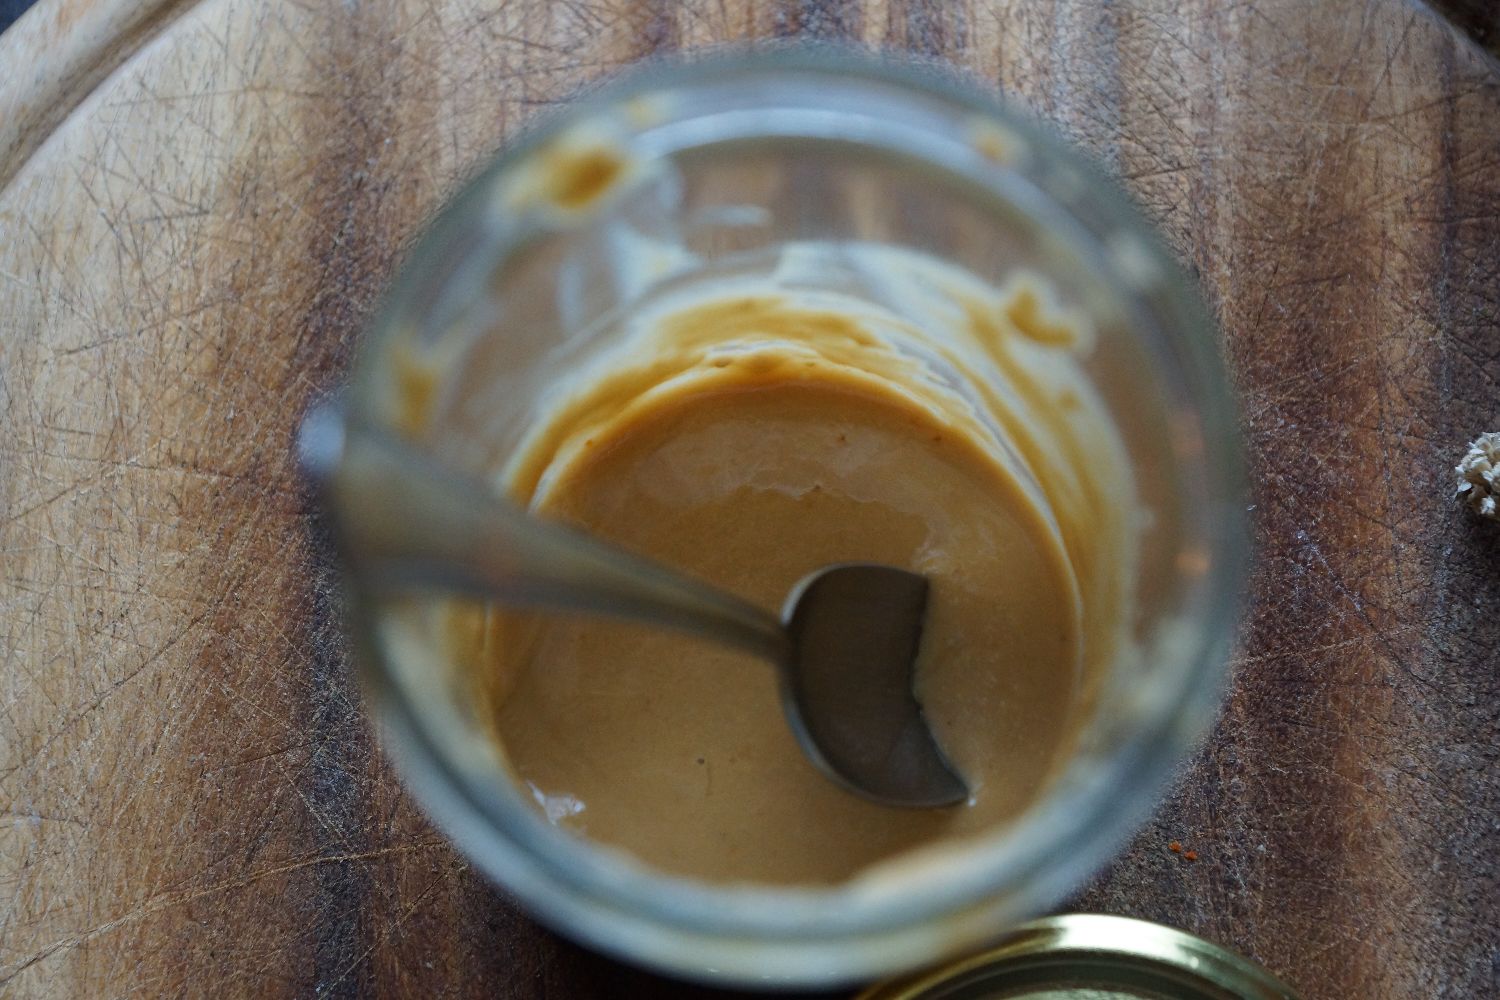 How to make Peanut Butter | Wie macht man Erdnussbutter